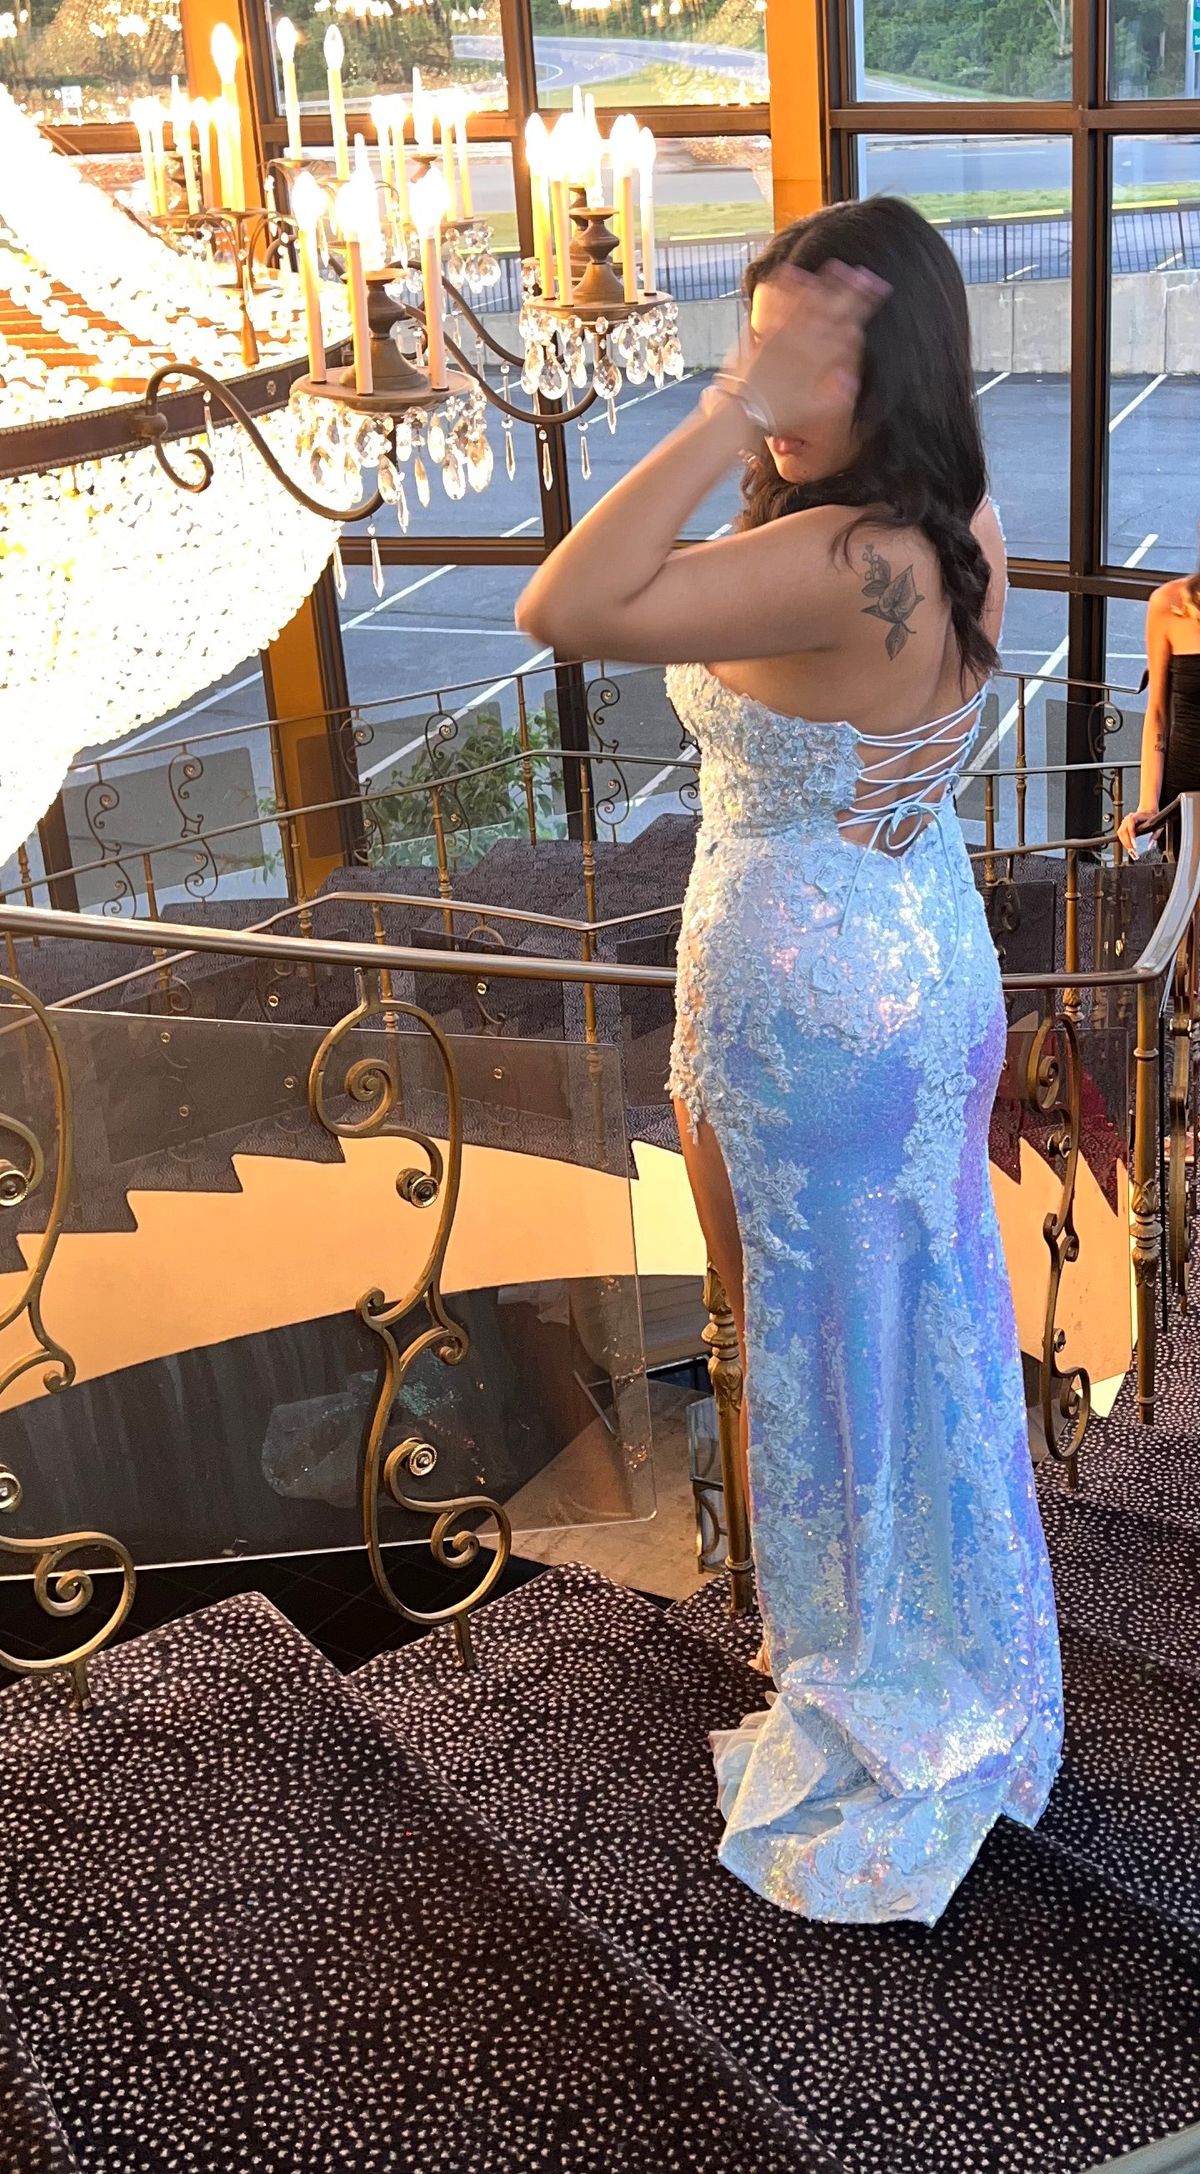 Sherri Hill Size 8 Prom One Shoulder Blue Side Slit Dress on Queenly